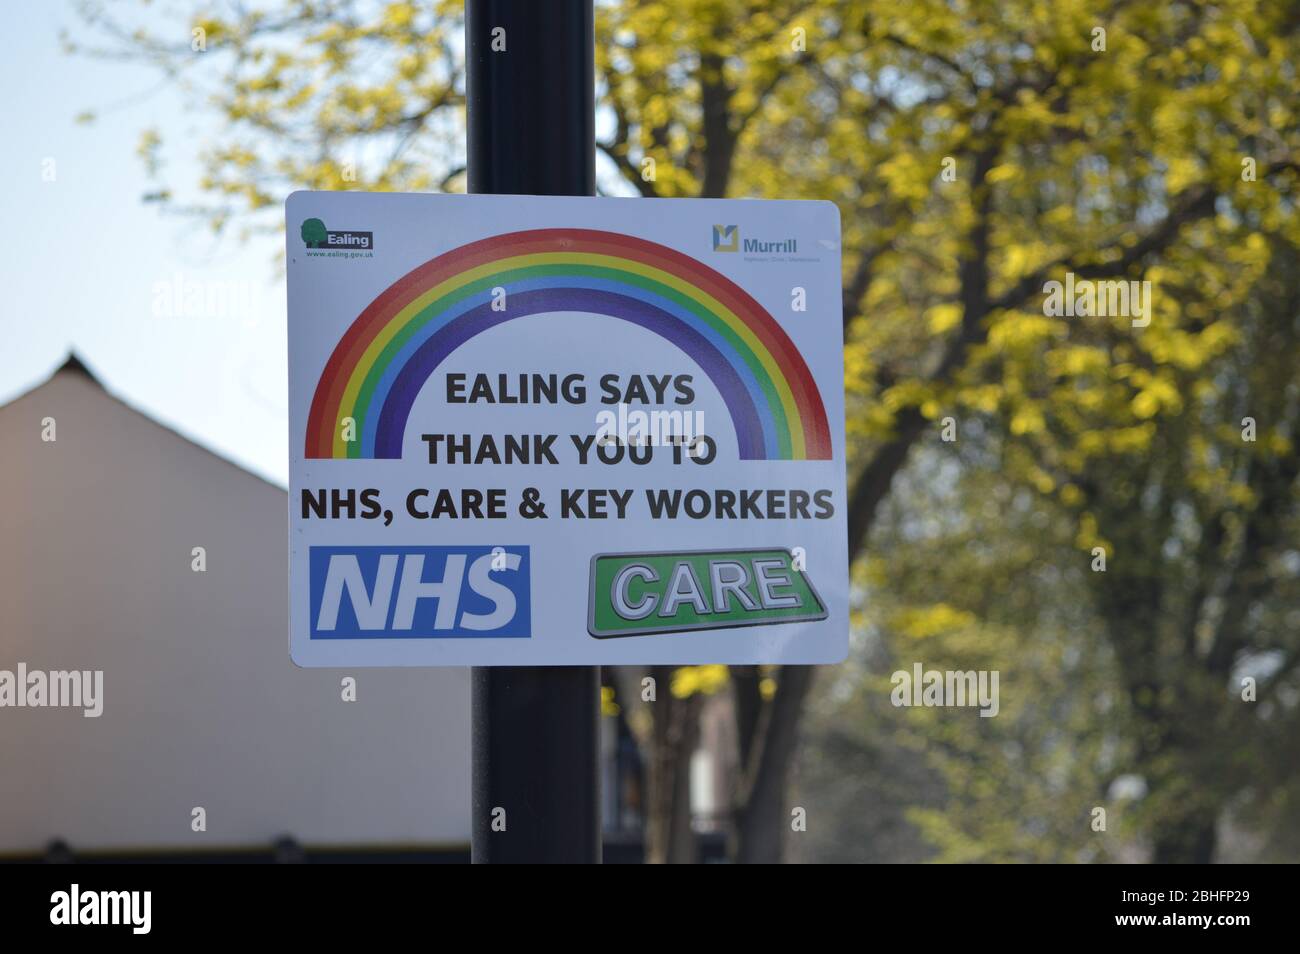 Londra, Regno Unito. 25 aprile 2020. Un messaggio da Ealing council che ringrazia il NHS, Care & Key Workers durante la pandemia del coronavirus. Foto Stock